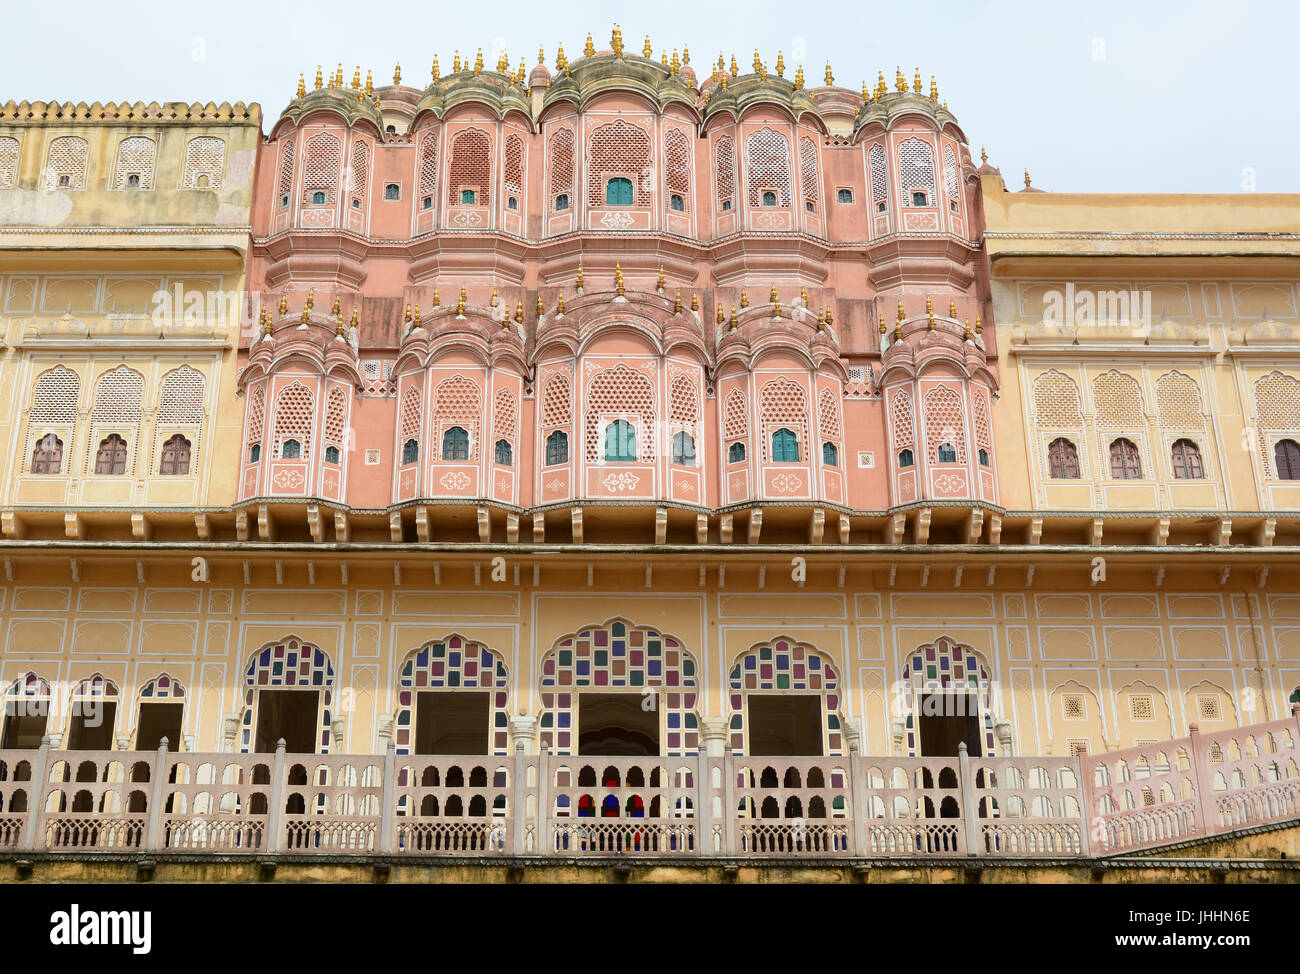 Details Of Hawa Mahal Wind Palace In Jaipur India Hawa Mahal Built In 1799 By Maharaja 9474